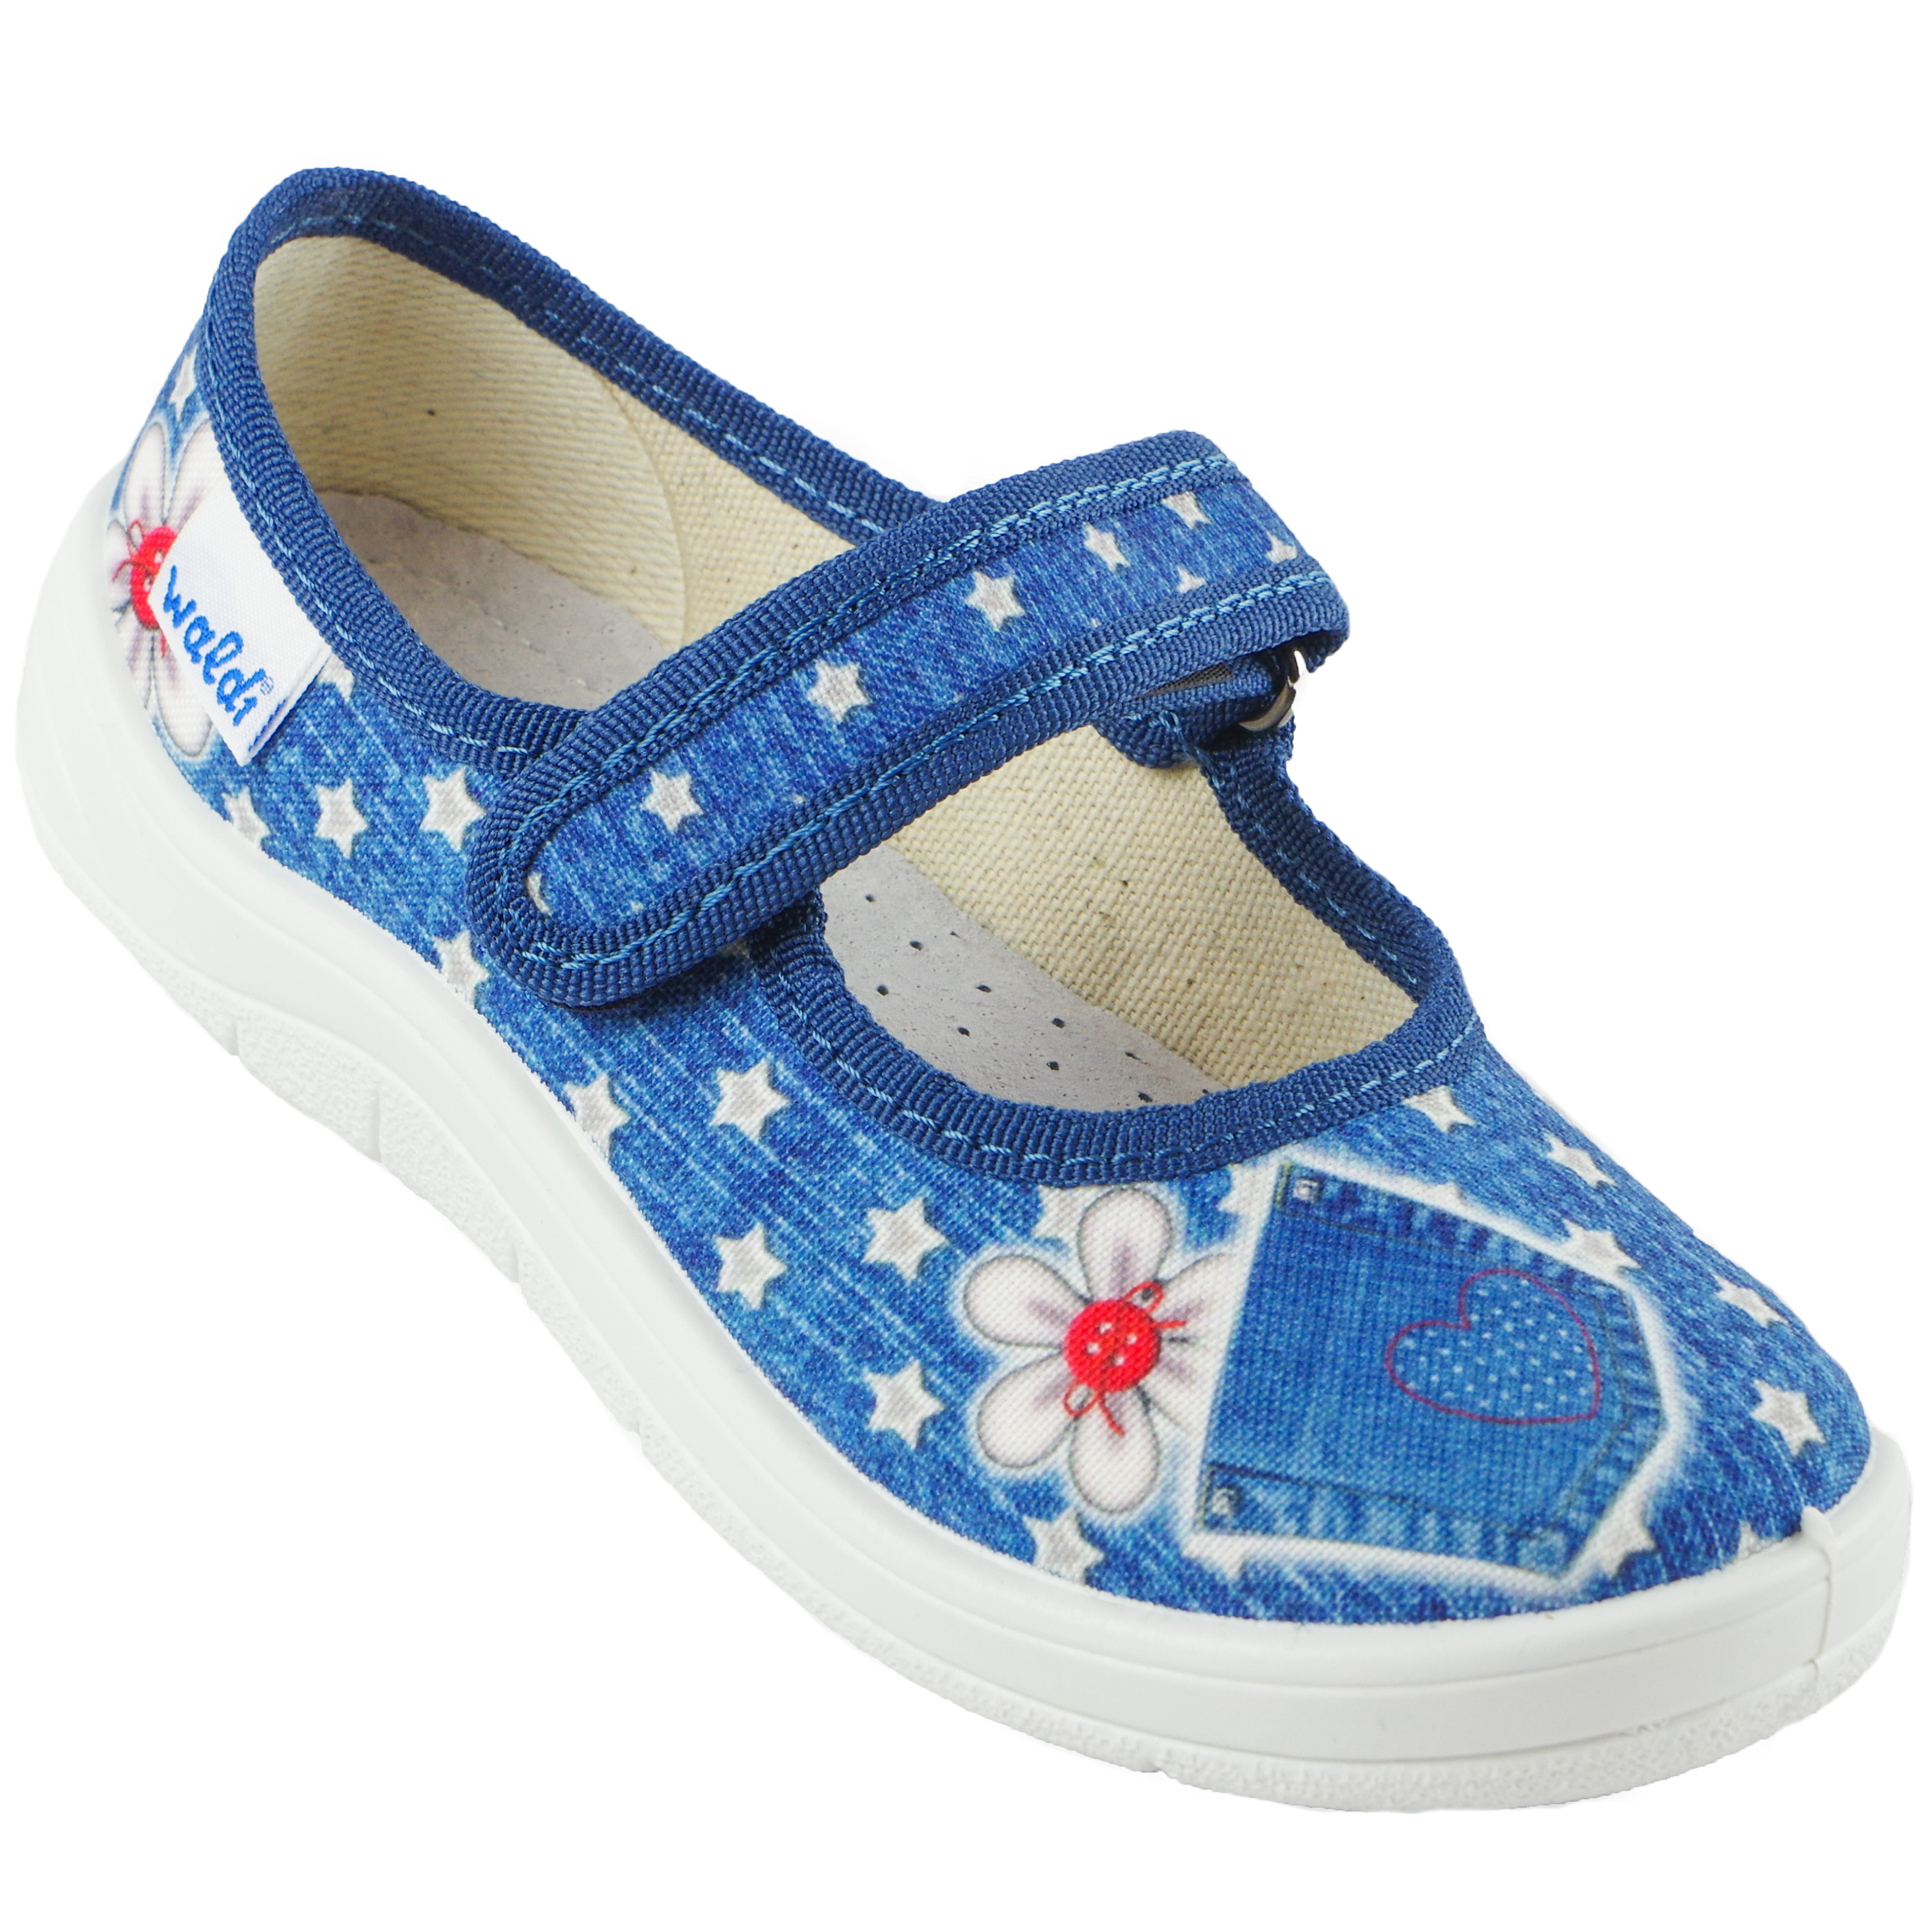 Текстильная обувь для девочек Тапочки Алина (1877) цвет Синий 24-30 размеры – Sole Kids